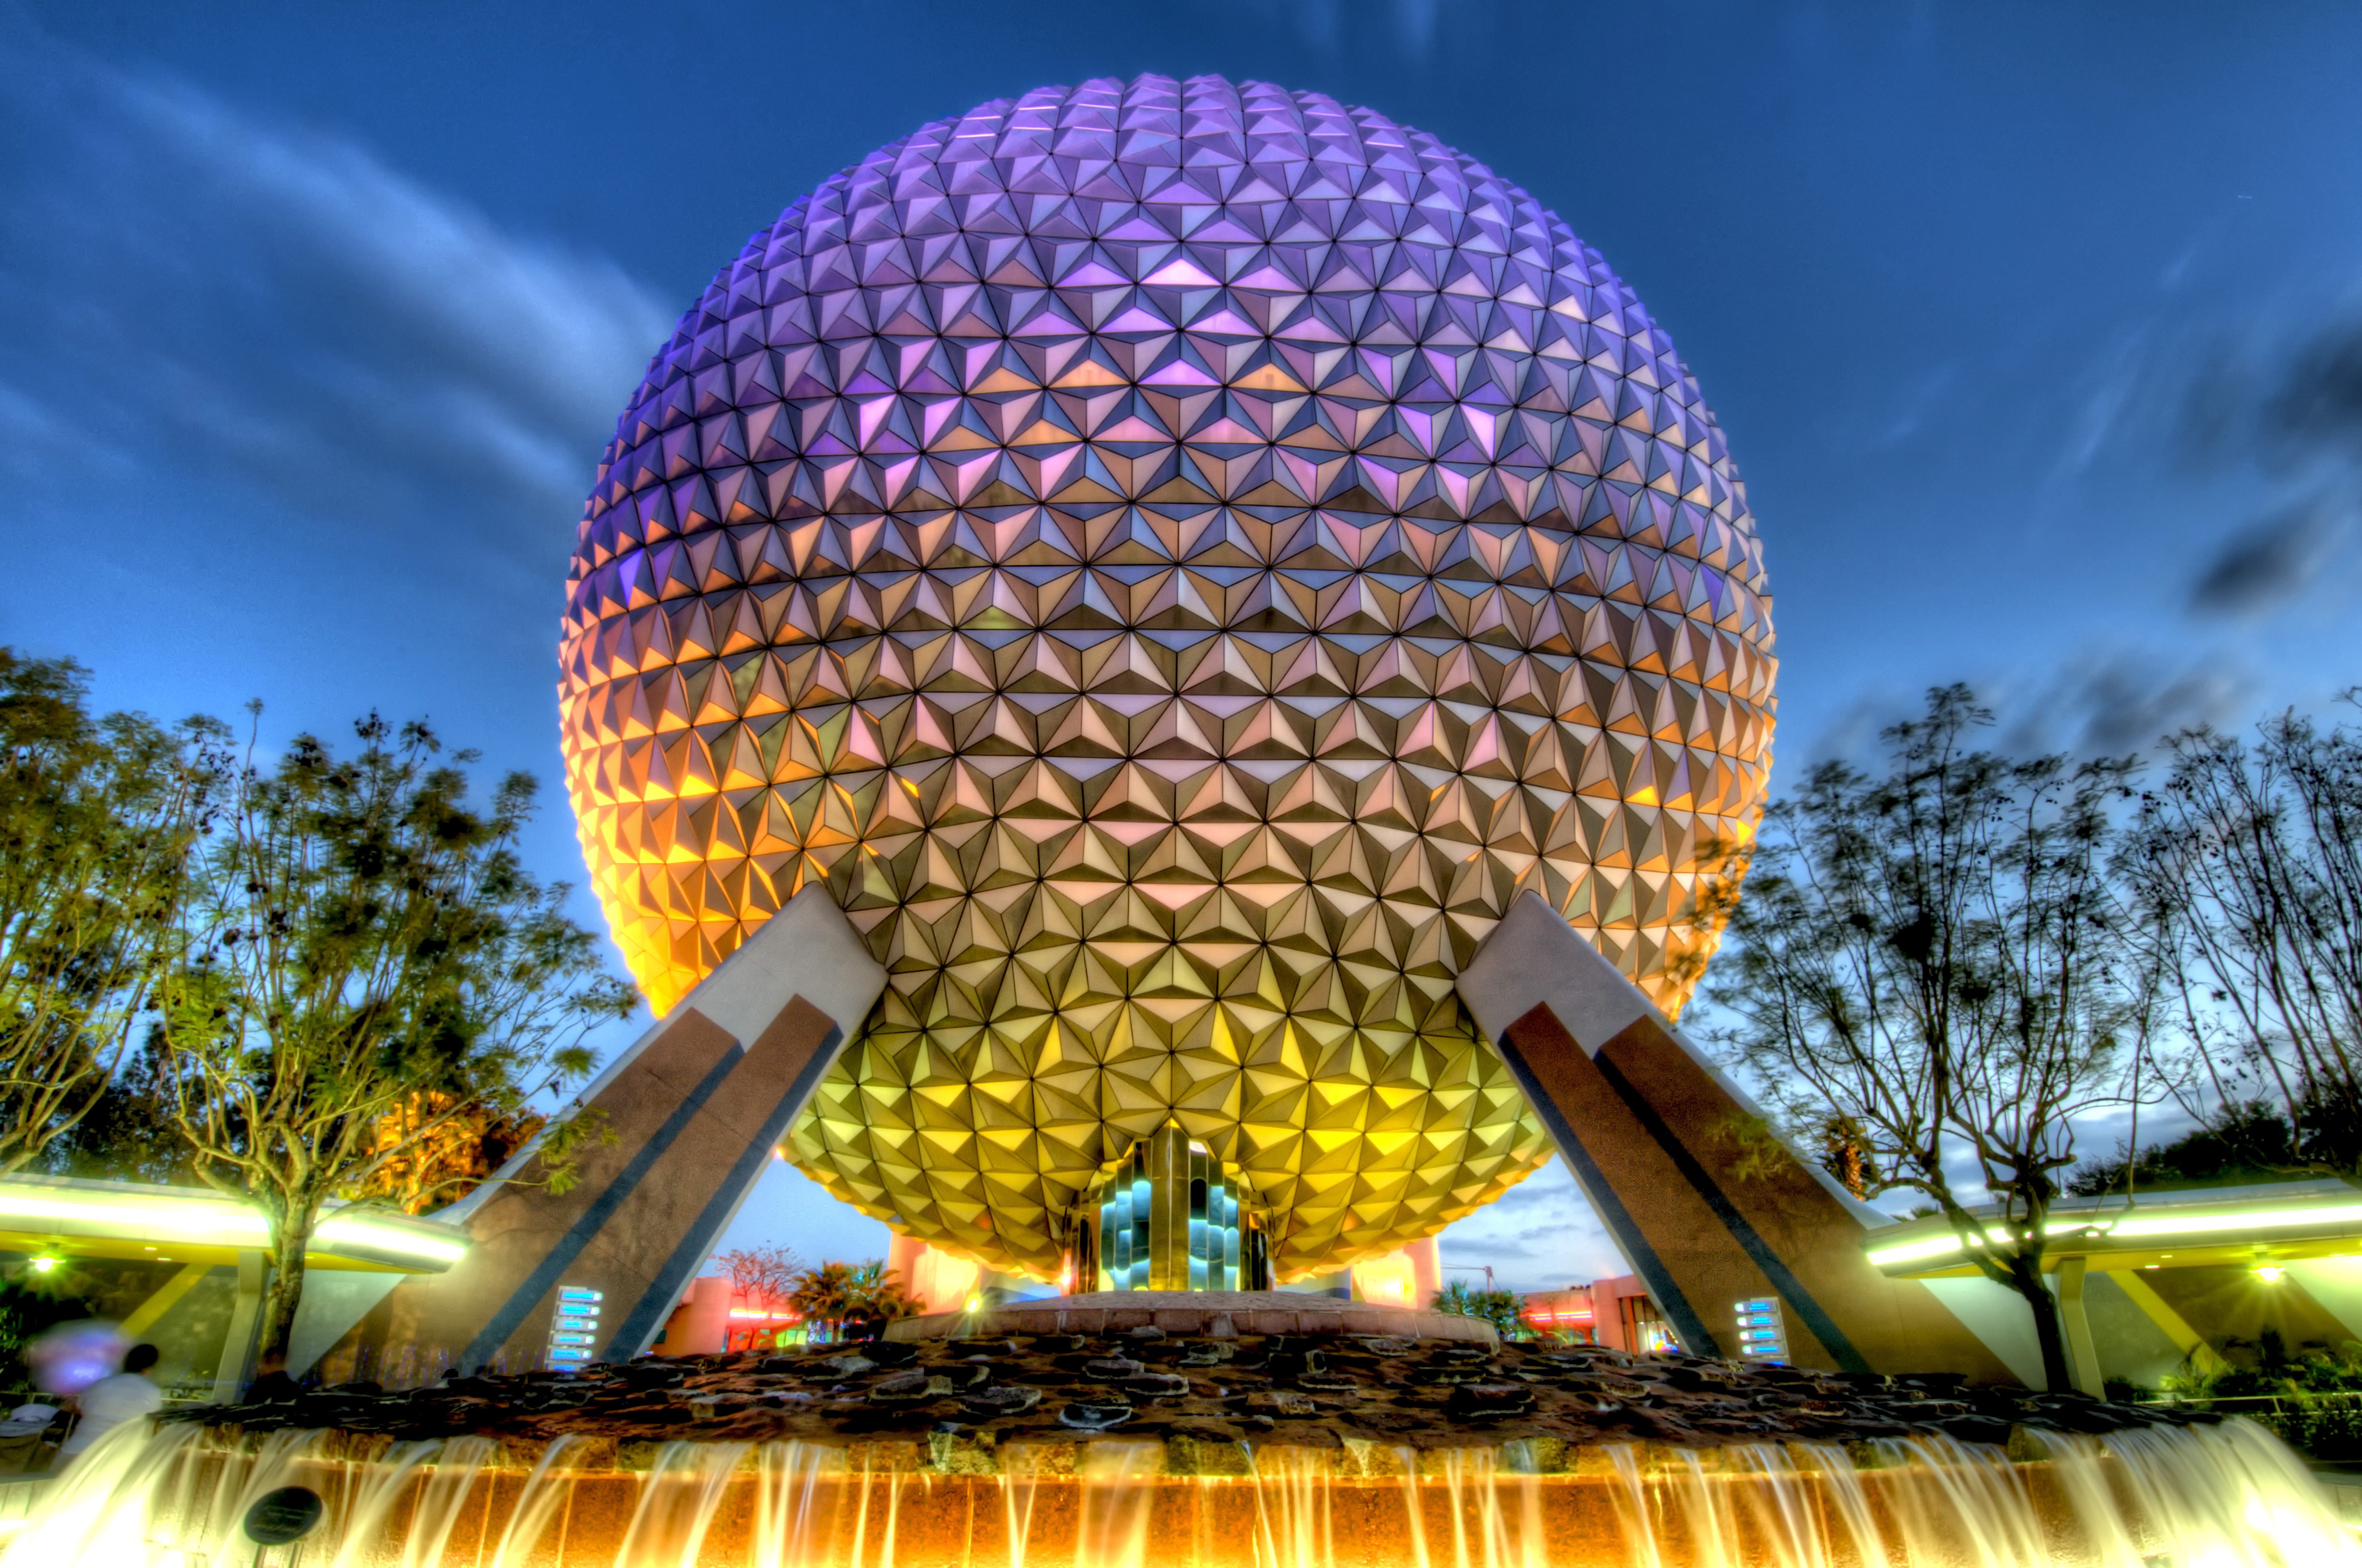 My Trip: Orlando - EPCOT Centre Disney World